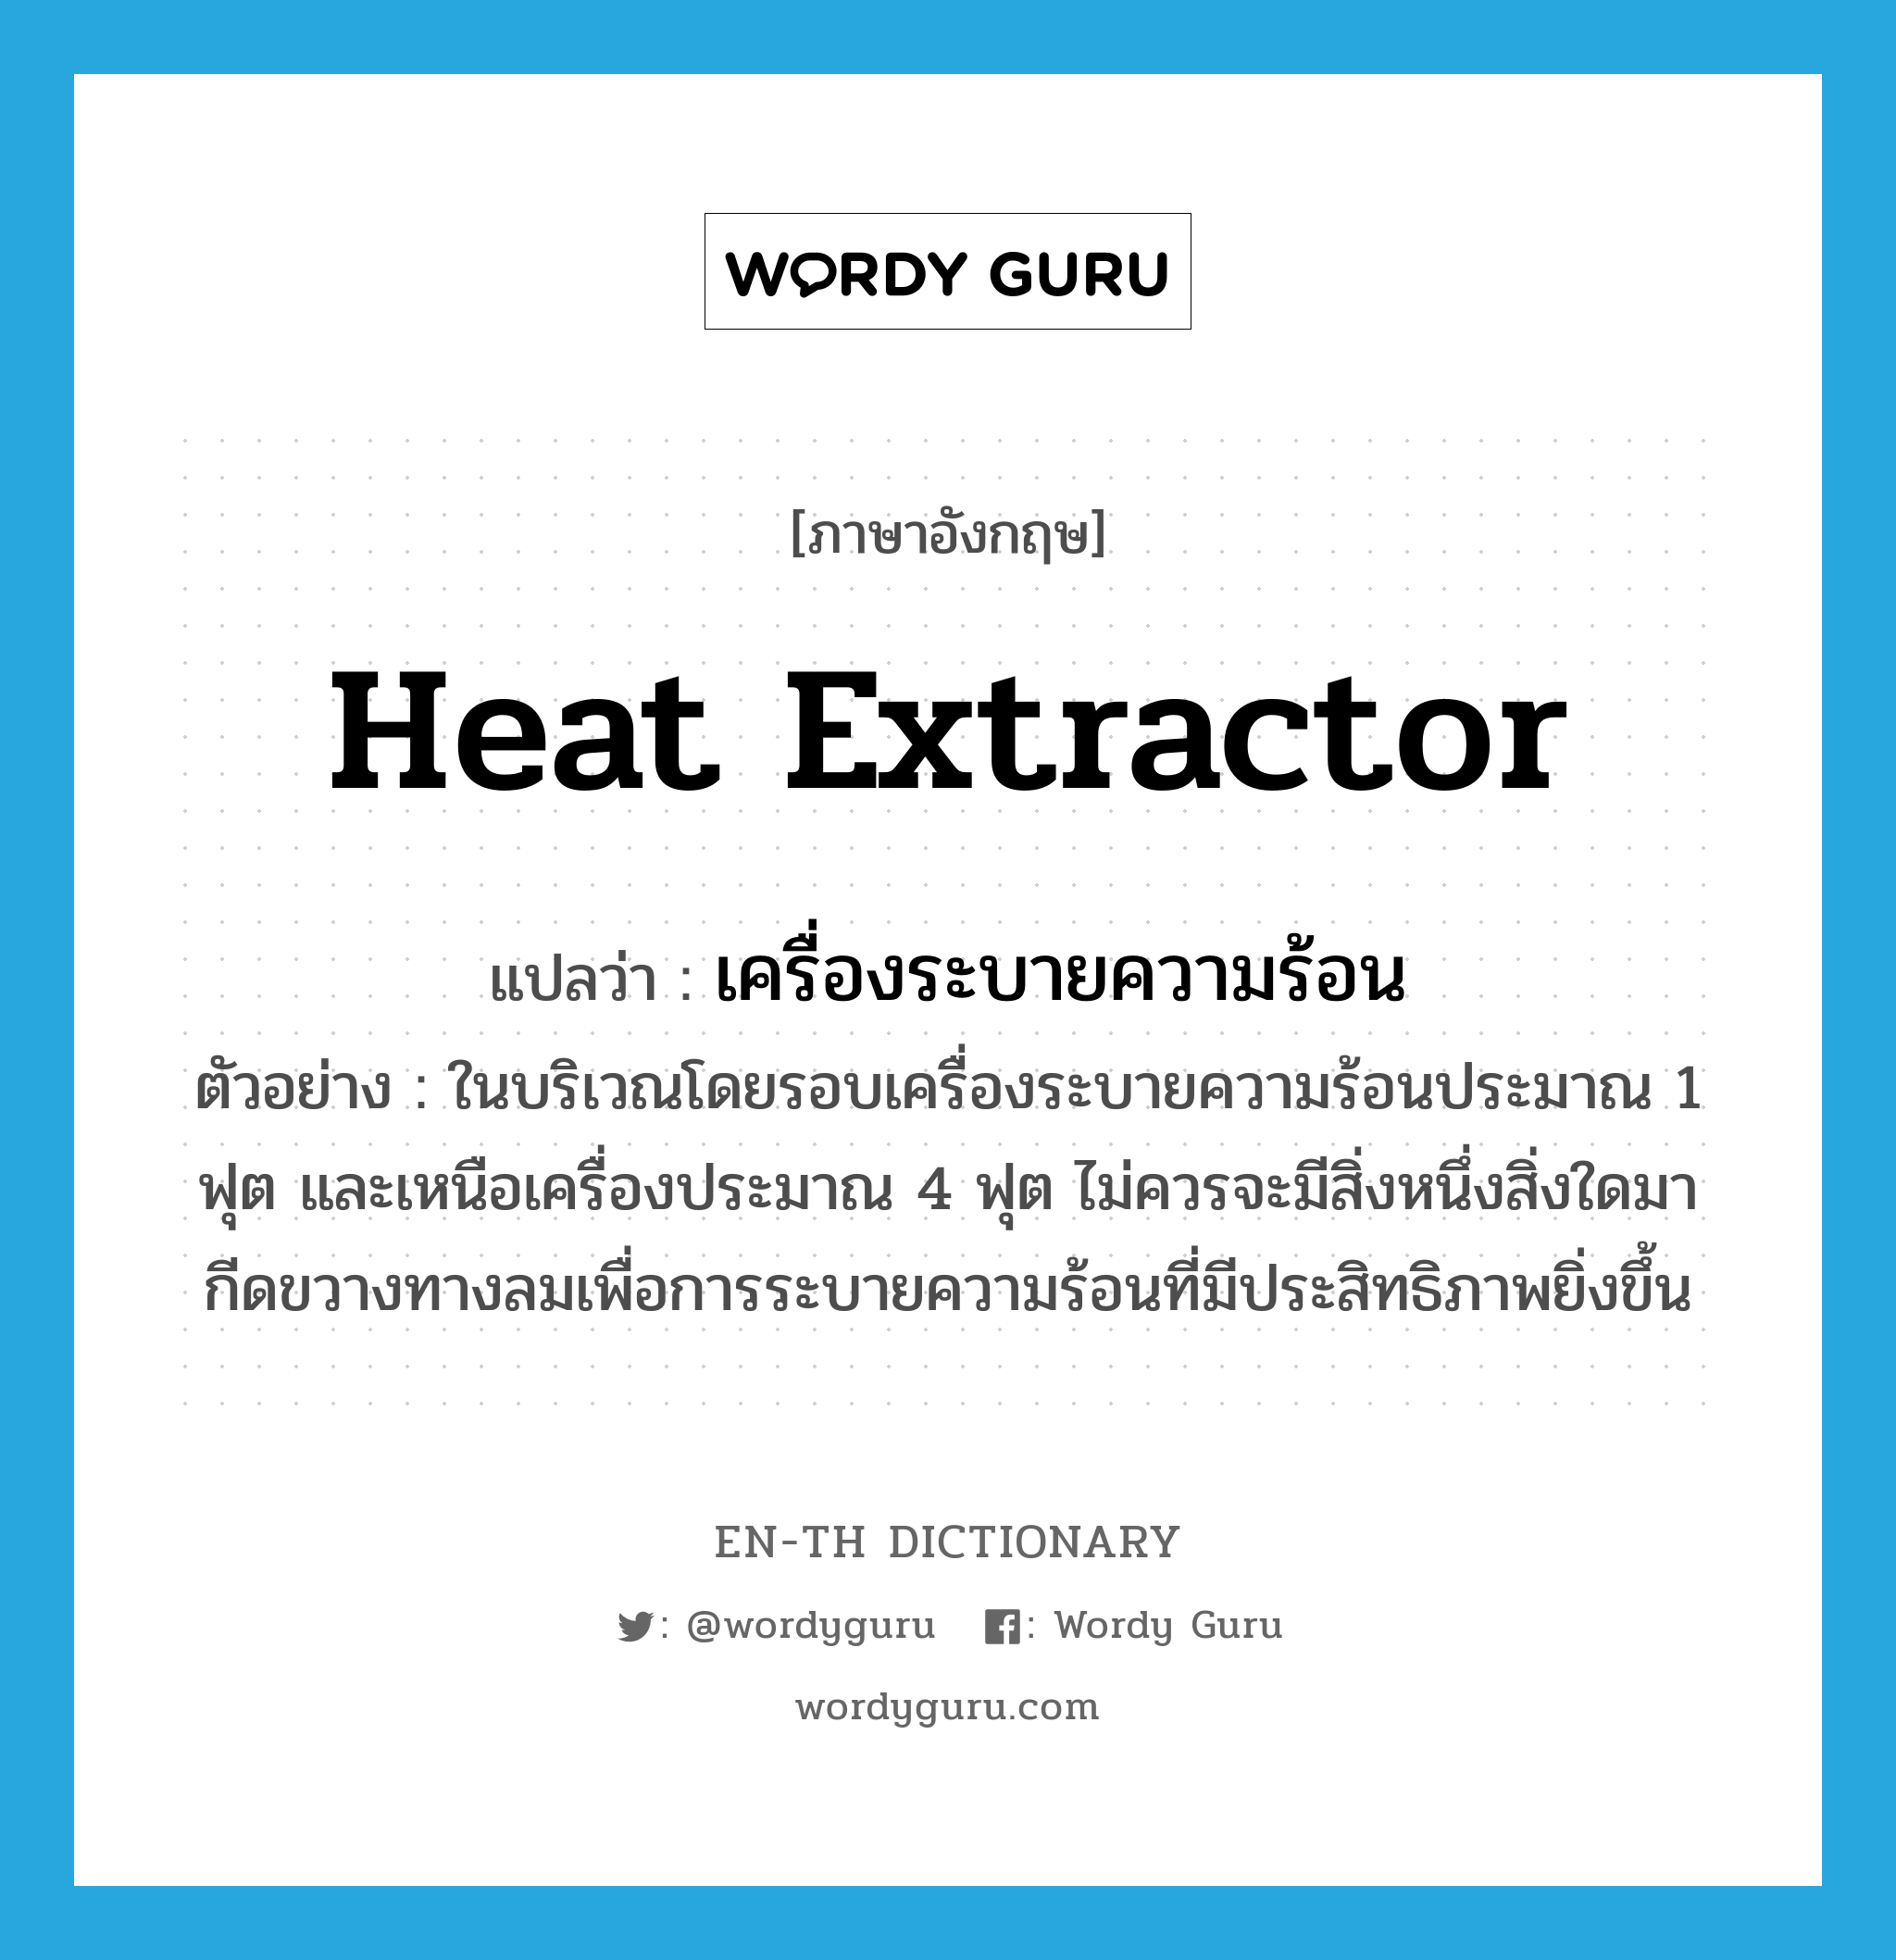 heat extractor แปลว่า?, คำศัพท์ภาษาอังกฤษ heat extractor แปลว่า เครื่องระบายความร้อน ประเภท N ตัวอย่าง ในบริเวณโดยรอบเครื่องระบายความร้อนประมาณ 1 ฟุต และเหนือเครื่องประมาณ 4 ฟุต ไม่ควรจะมีสิ่งหนึ่งสิ่งใดมากีดขวางทางลมเพื่อการระบายความร้อนที่มีประสิทธิภาพยิ่งขึ้น หมวด N